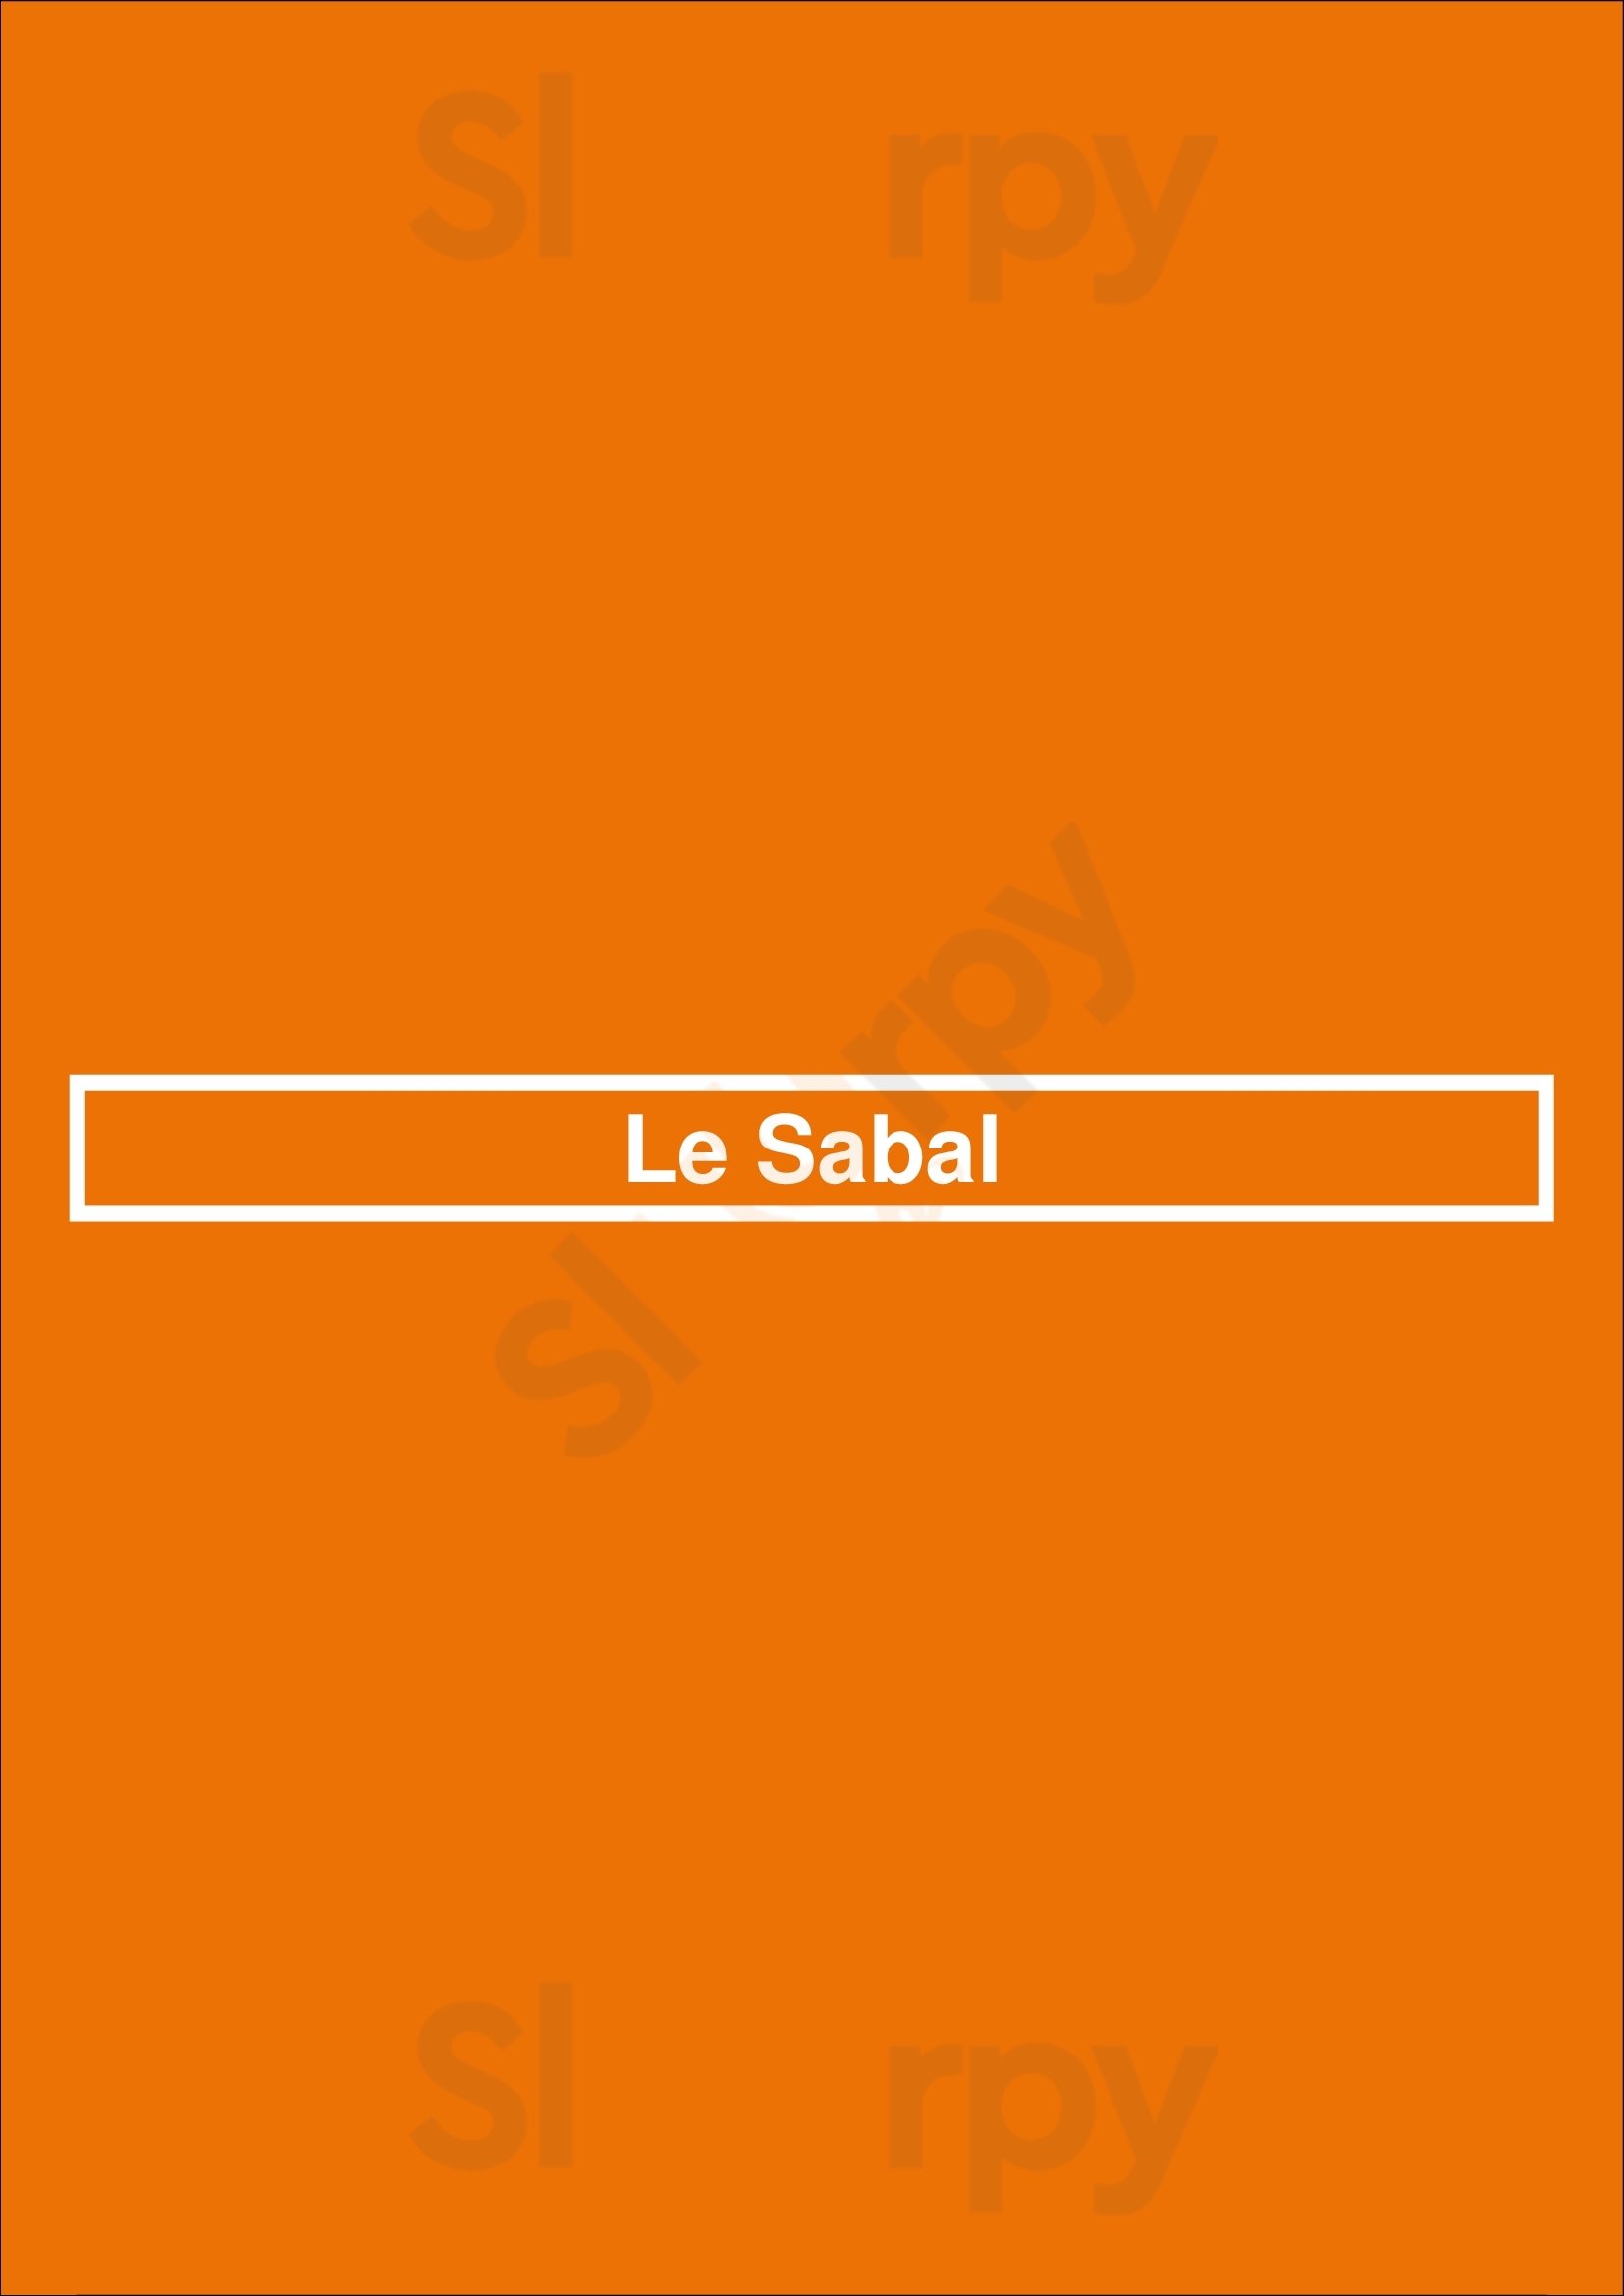 Le Sabal Paris Menu - 1